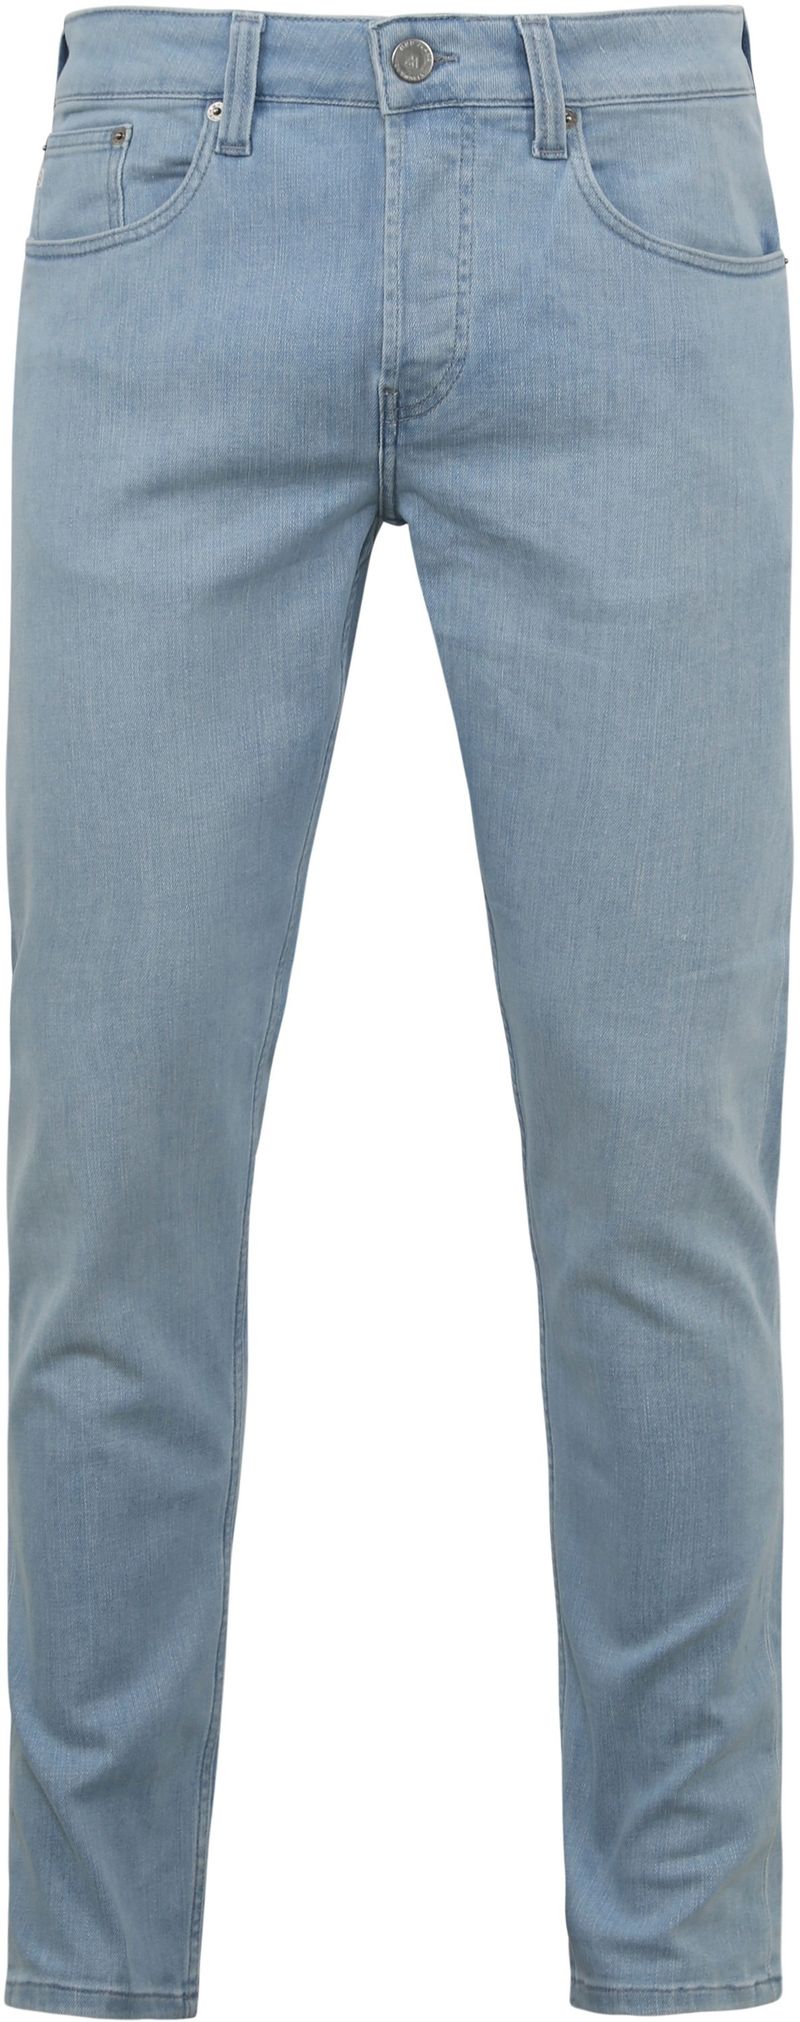 MUD Jeans Denim Slimmer Rick Hellblau - Größe W 34 - L 32 von MUD Jeans